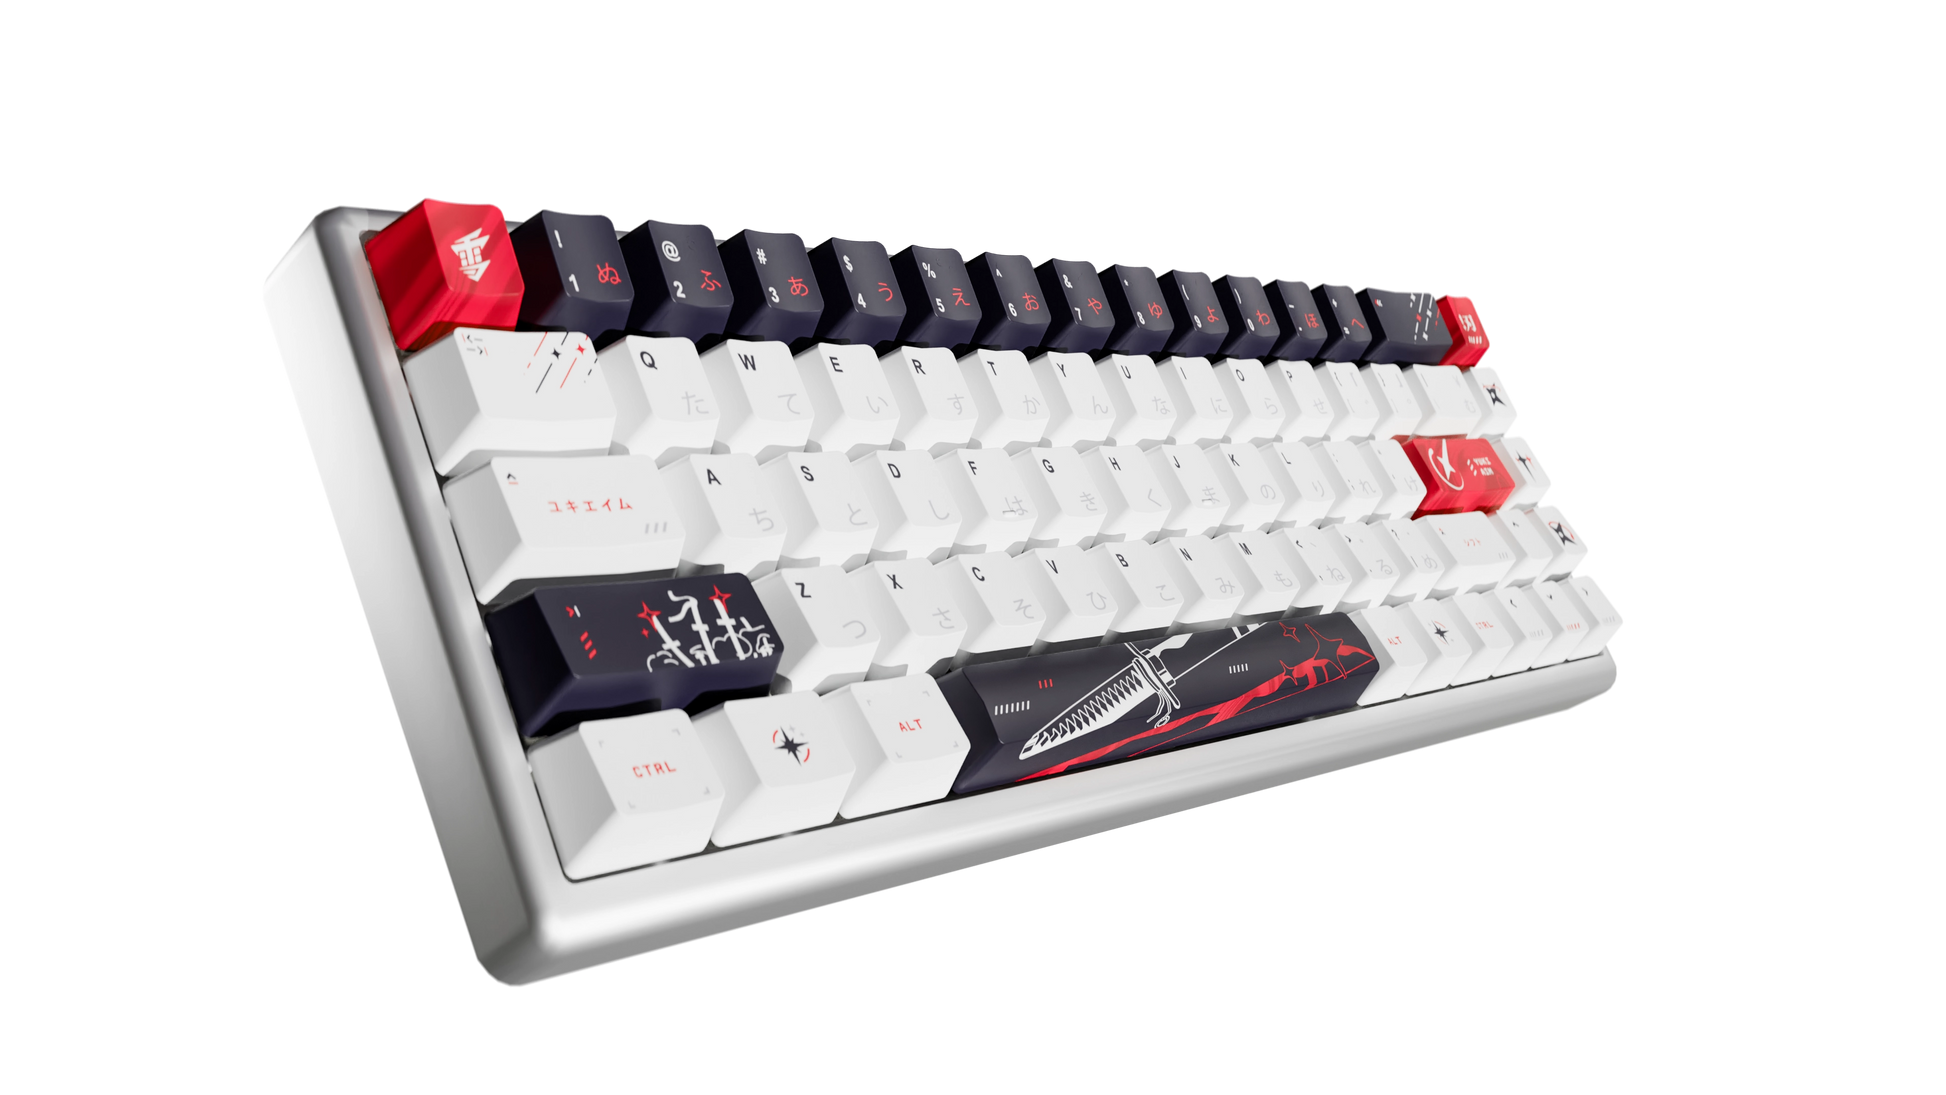 Yuki aim keyboard 65%キーキャップスイッチプラー